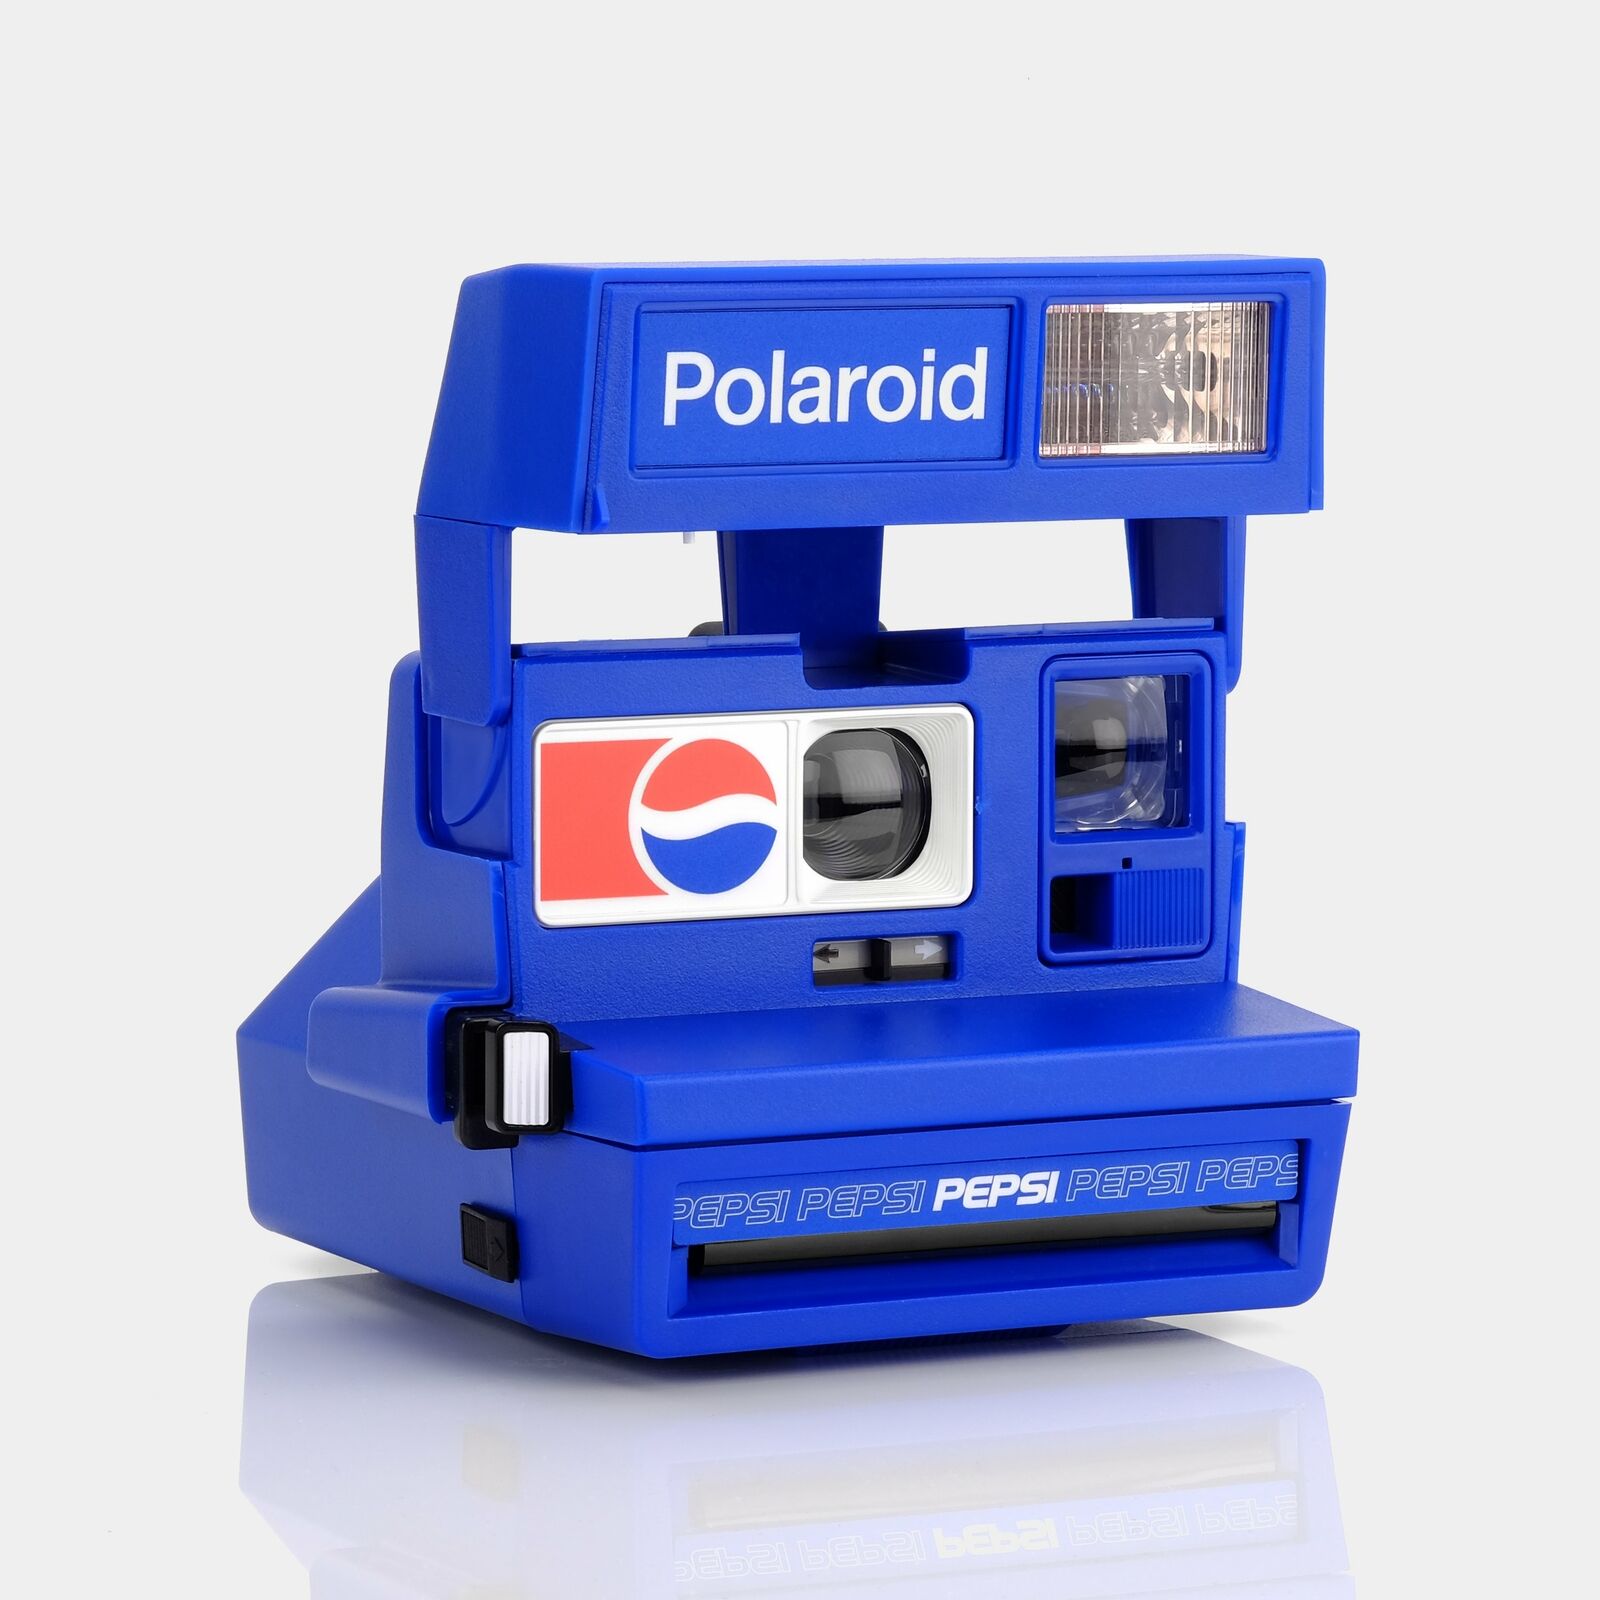 Polaroid 600 Pepsi Instant Film Camera.